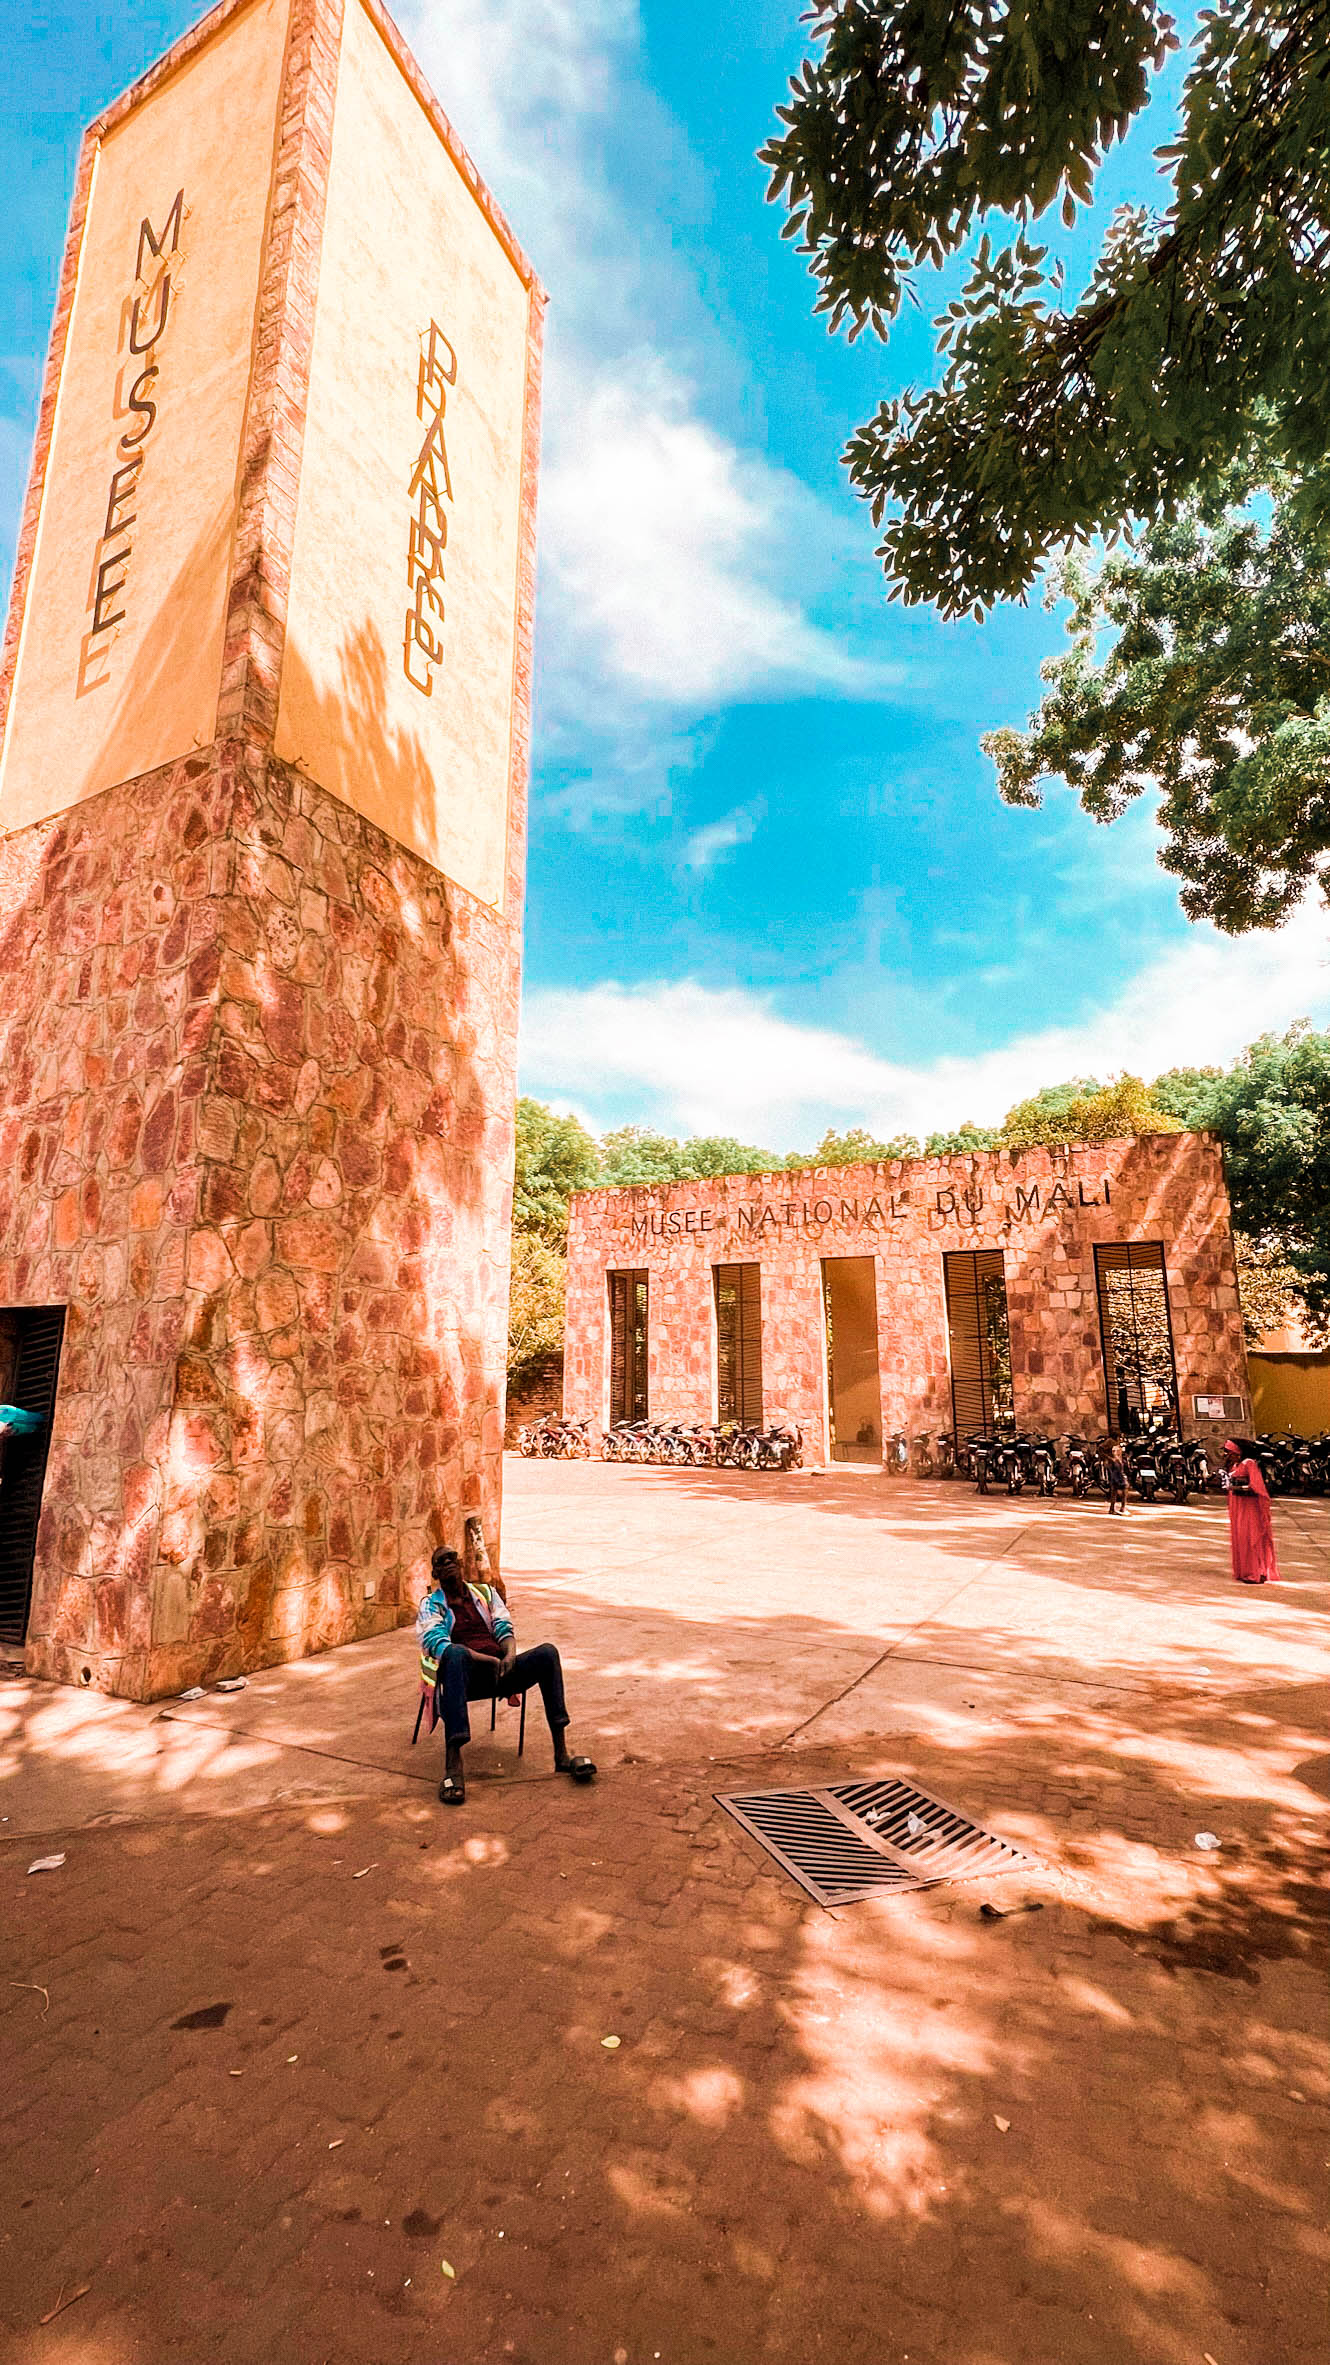 Monuments à Bamako : Musée National du Mali - Pays d'Afrique à visiter